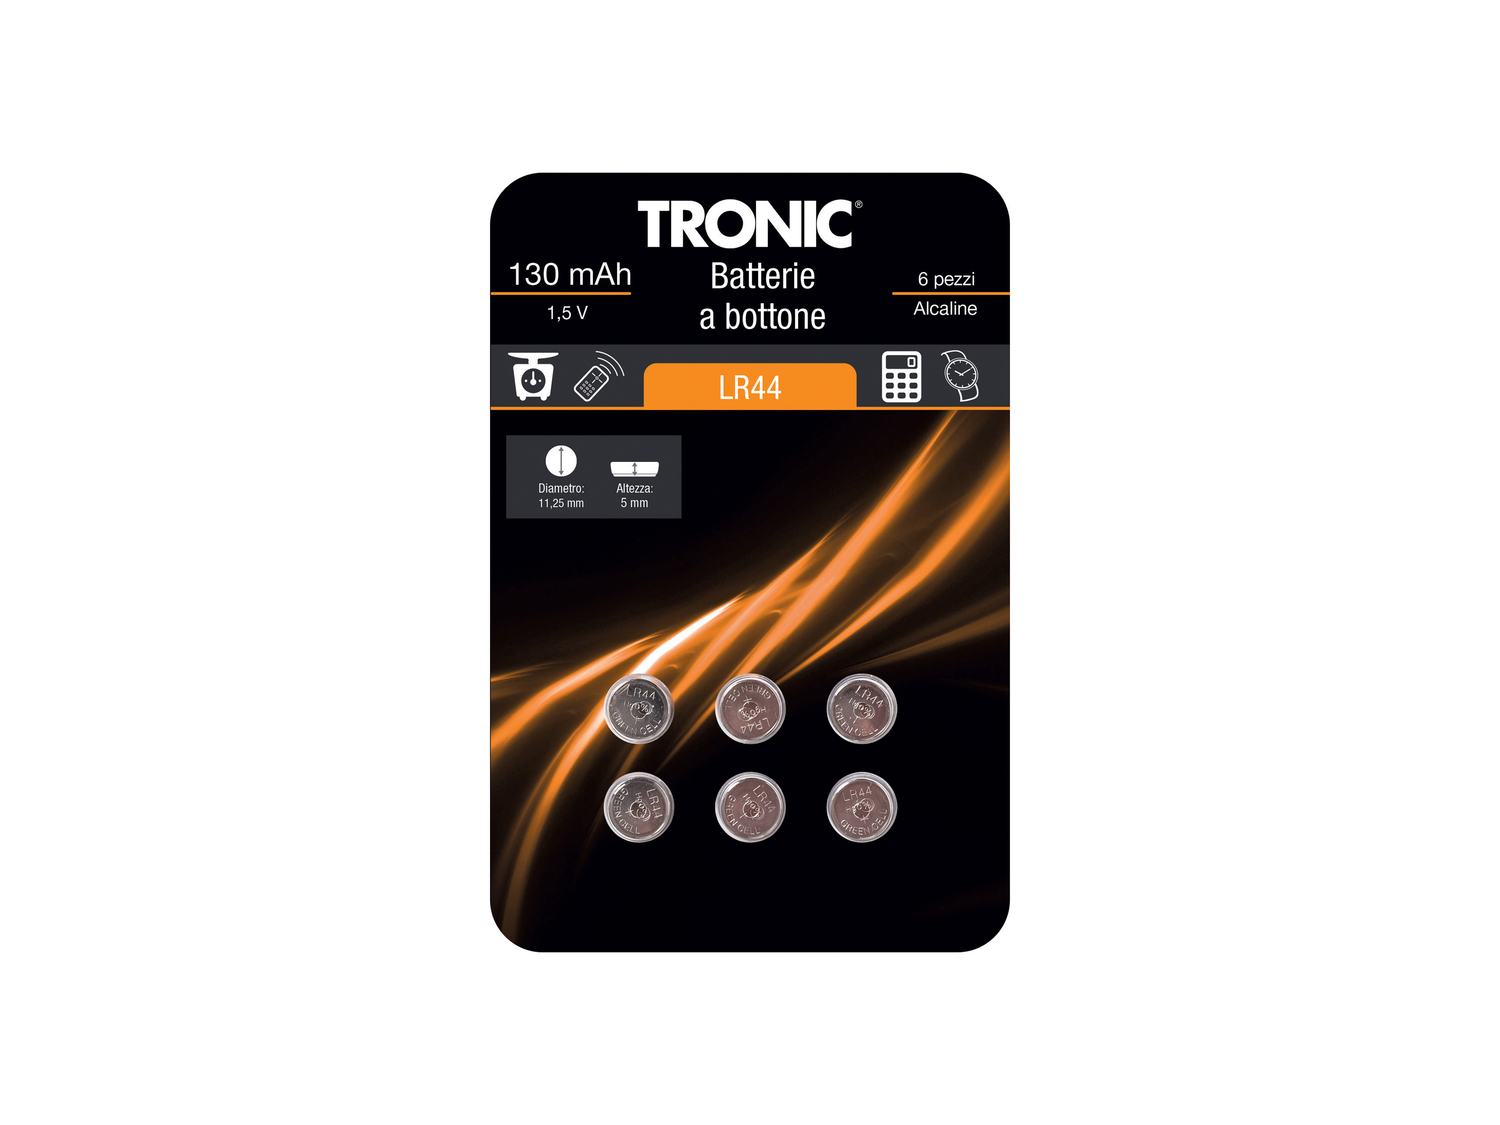 Batterie a bottone Tronic, prezzo 0.99 € 
6 pezzi 
- Alcaline o al litio
- ...